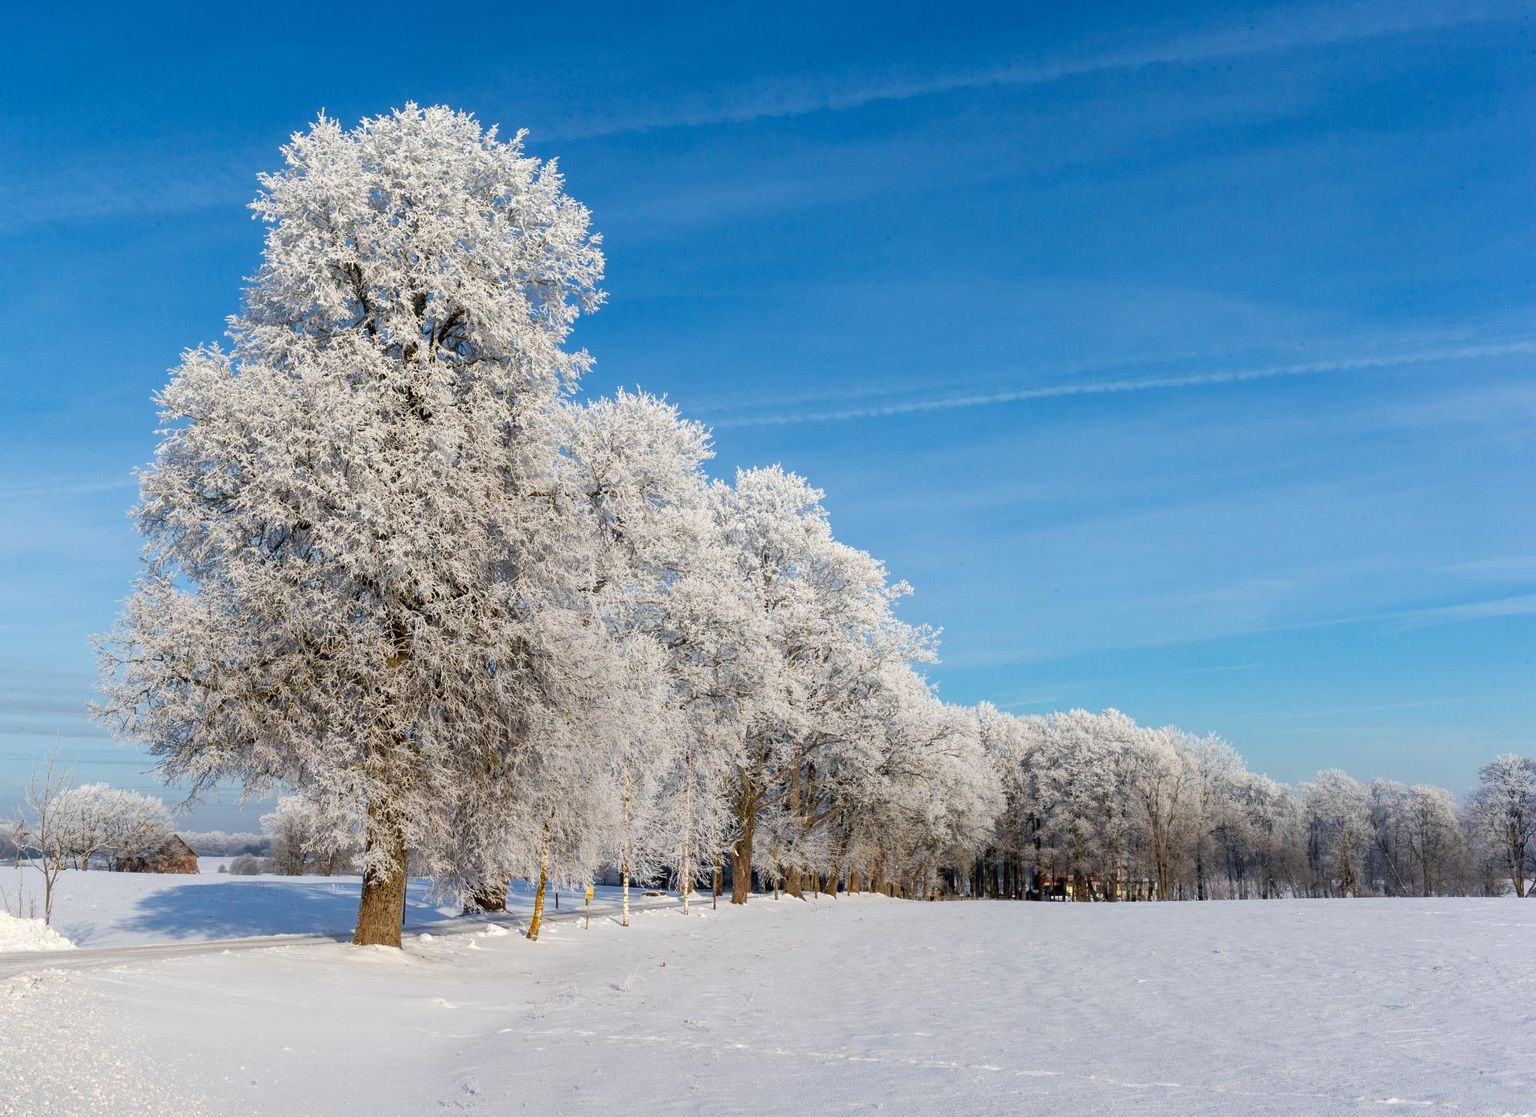 Euroopa Keskuse prognoos on jäänud kindlaks paljuaastasest keskmisest vaid veidi pehmemale talvele: jaanuar peaaegu keskmine, veebruar ja märts umbes pool kraadi keskmisest soojemad.